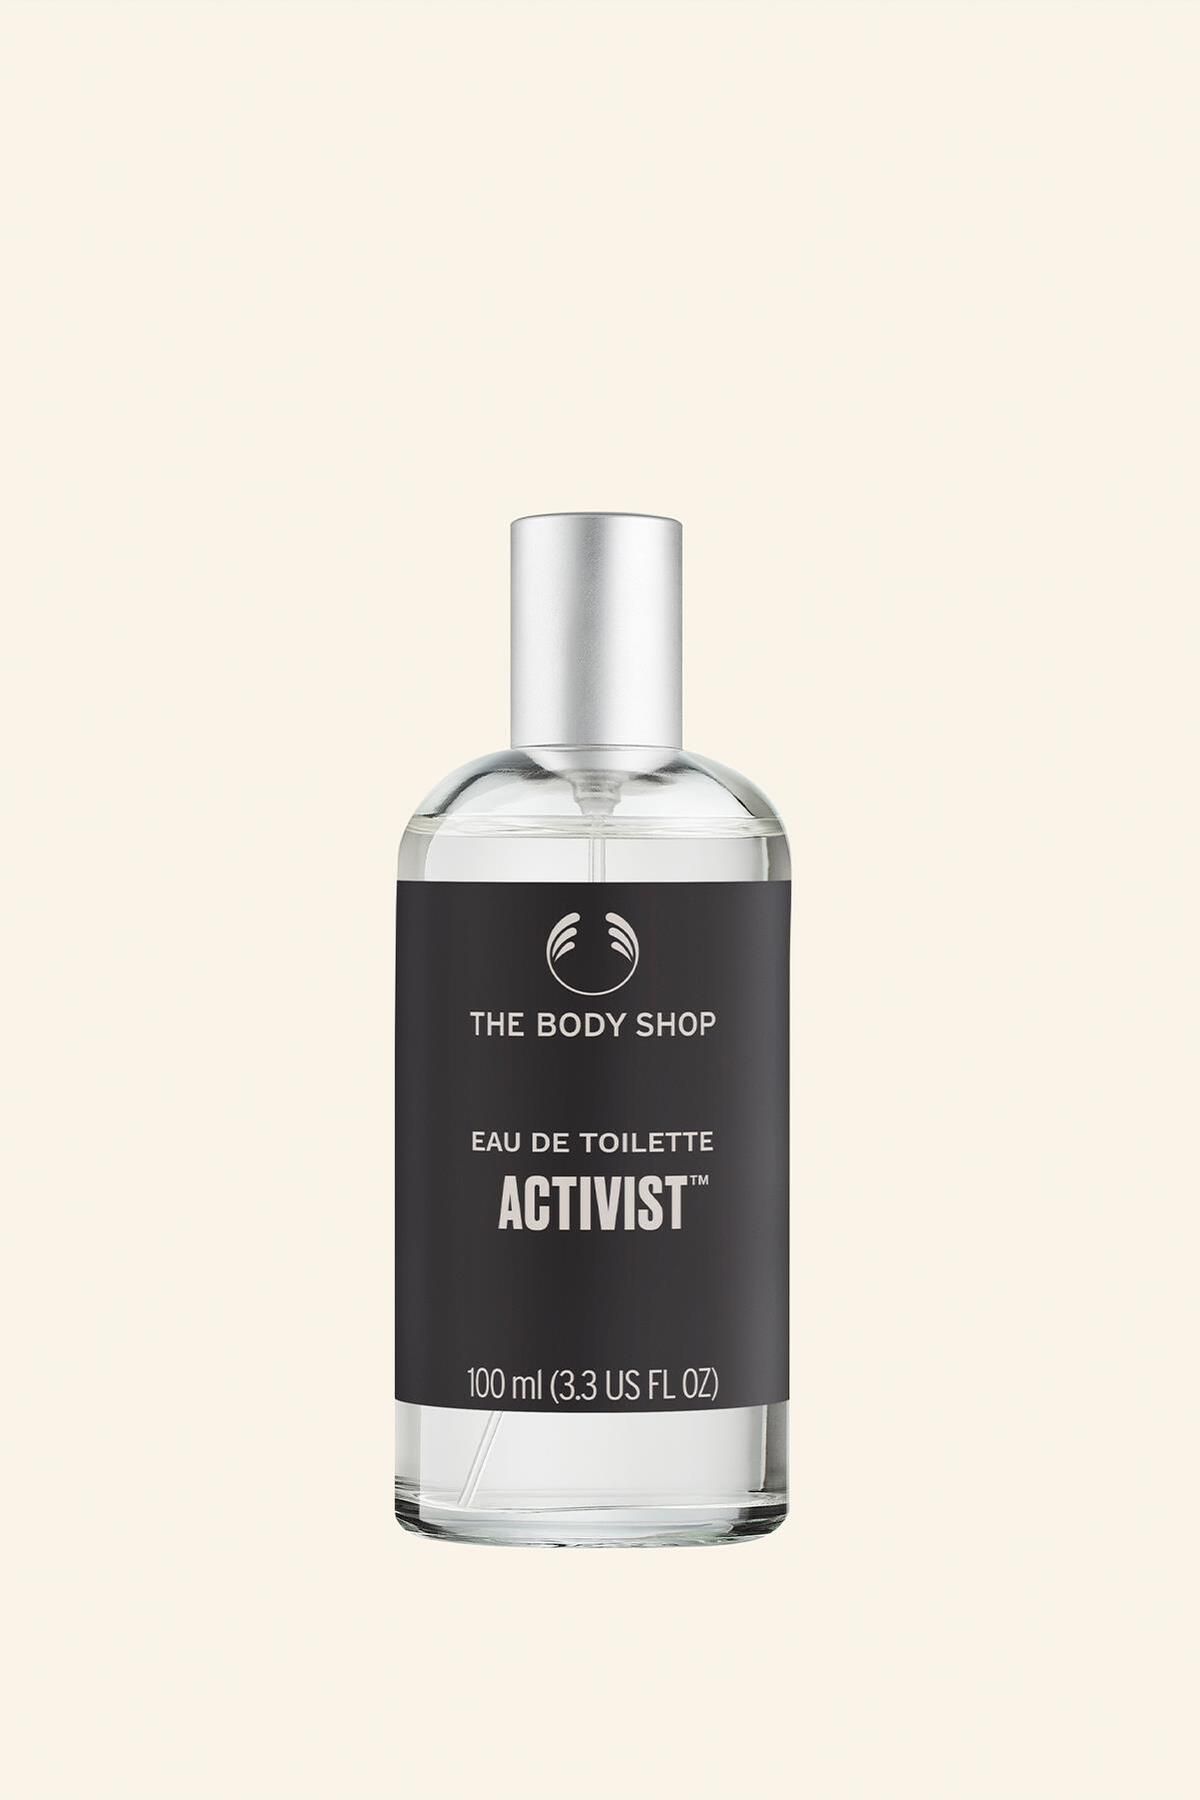 THE BODY SHOP Activist Eau De Toilette 100 ml